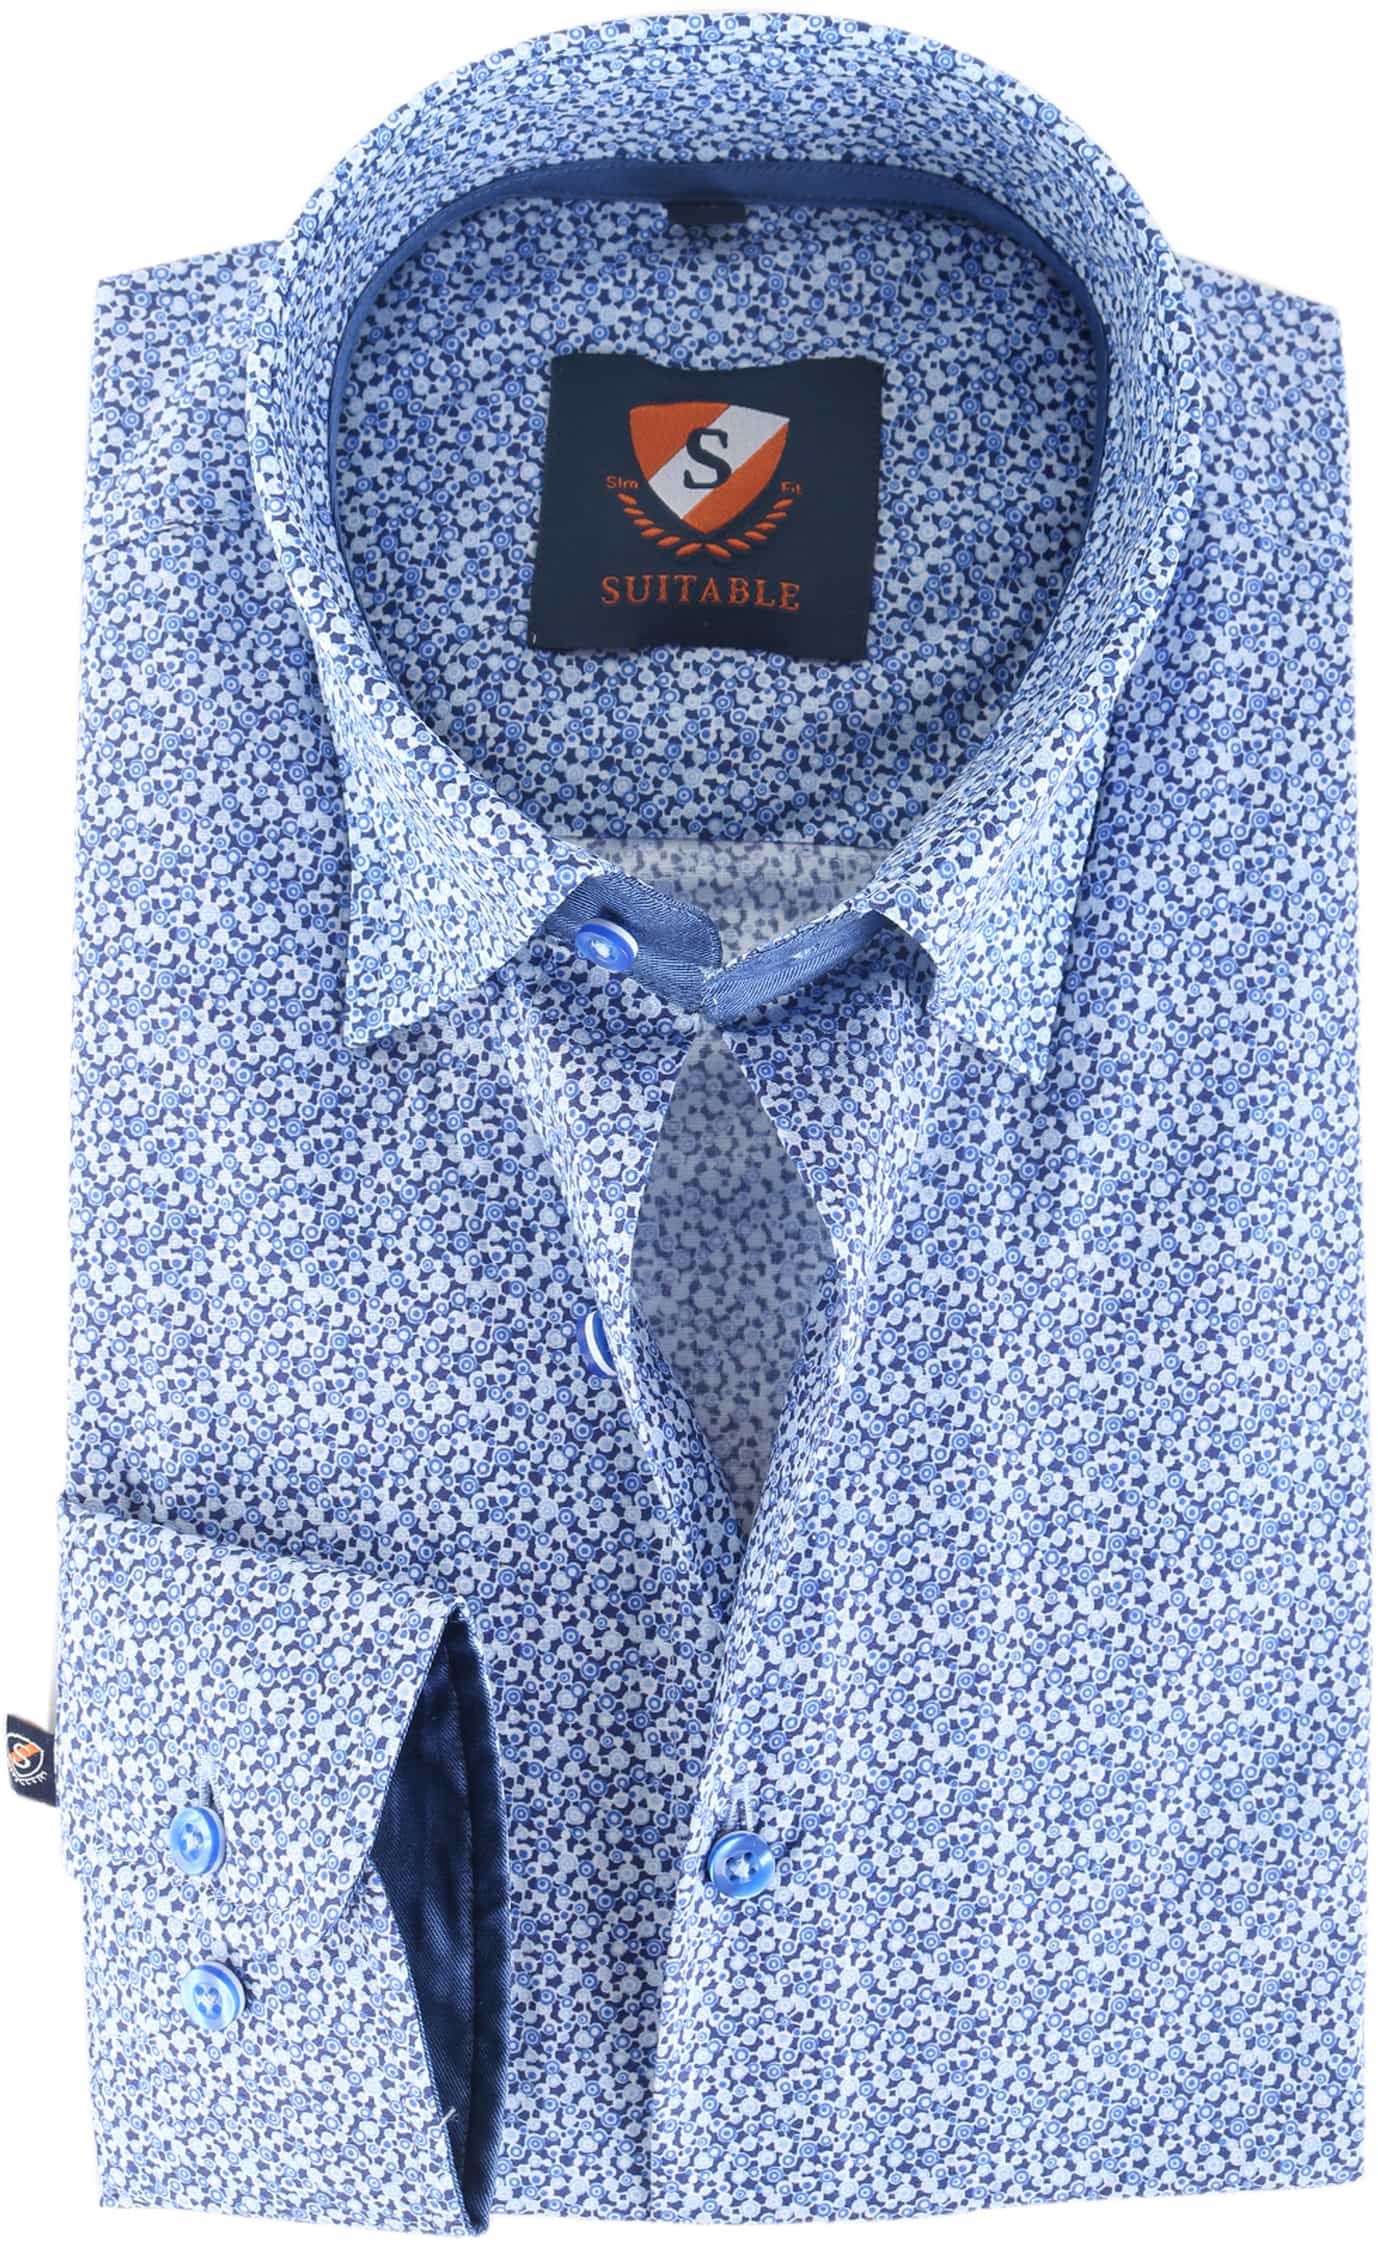 Suitable Shirt 145-6 Blue size 15 1/2